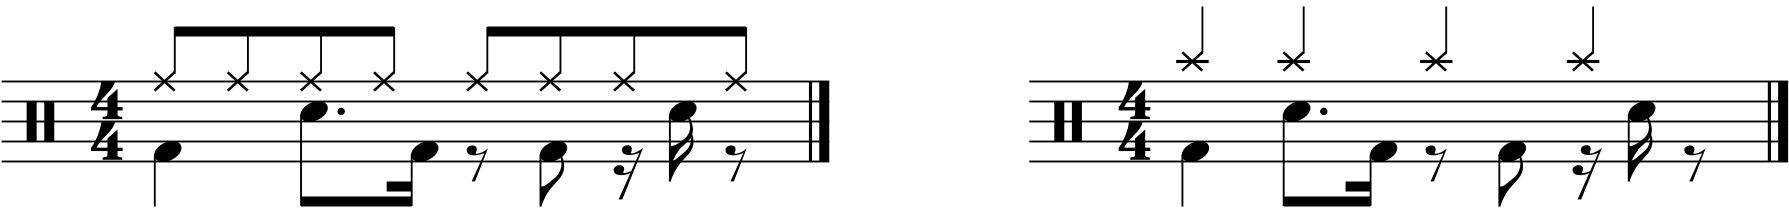 A 43333 rhythmed groove